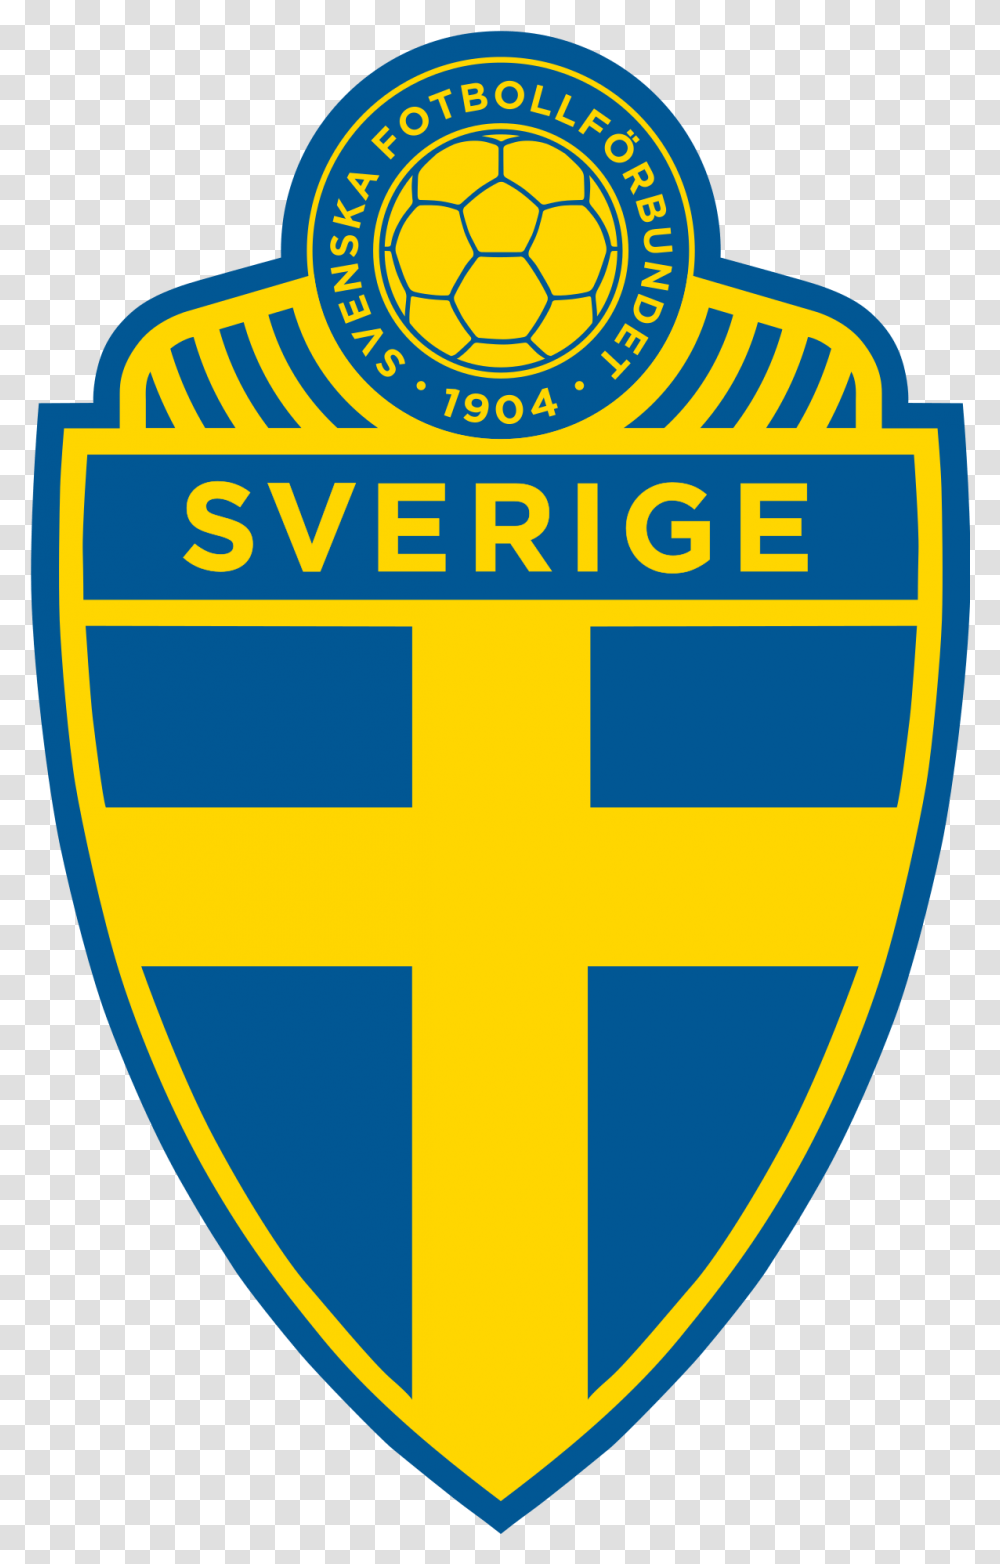 Sweden National Football Team Sweden National Football Team Logo, Symbol, Trademark, Armor, Badge Transparent Png